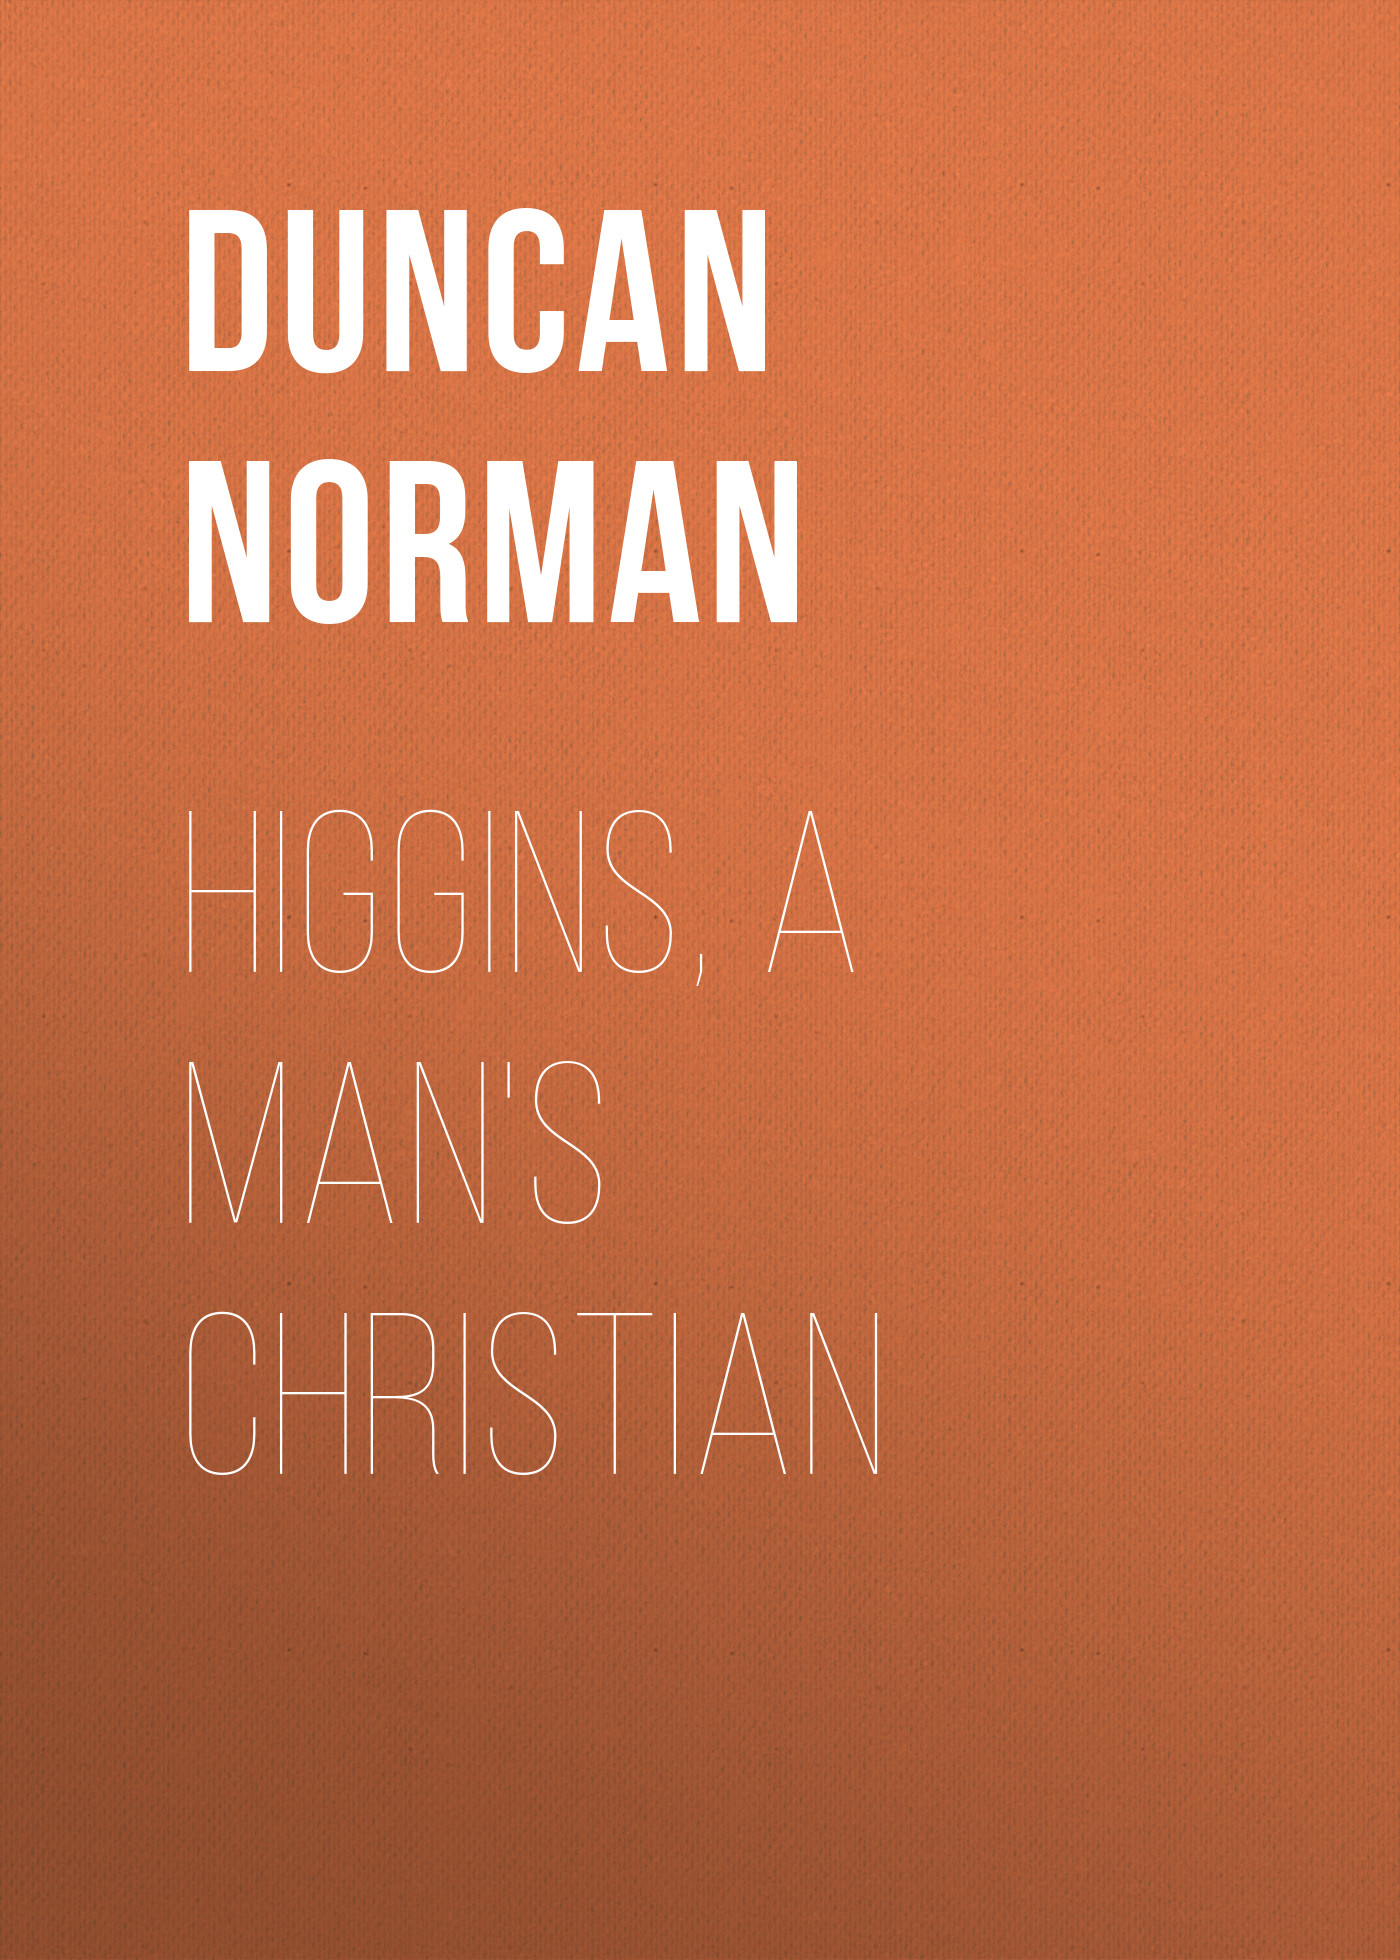 Книга Higgins, a Man's Christian из серии , созданная Norman Duncan, может относится к жанру Зарубежная старинная литература, Зарубежная классика. Стоимость электронной книги Higgins, a Man's Christian с идентификатором 24619885 составляет 0 руб.